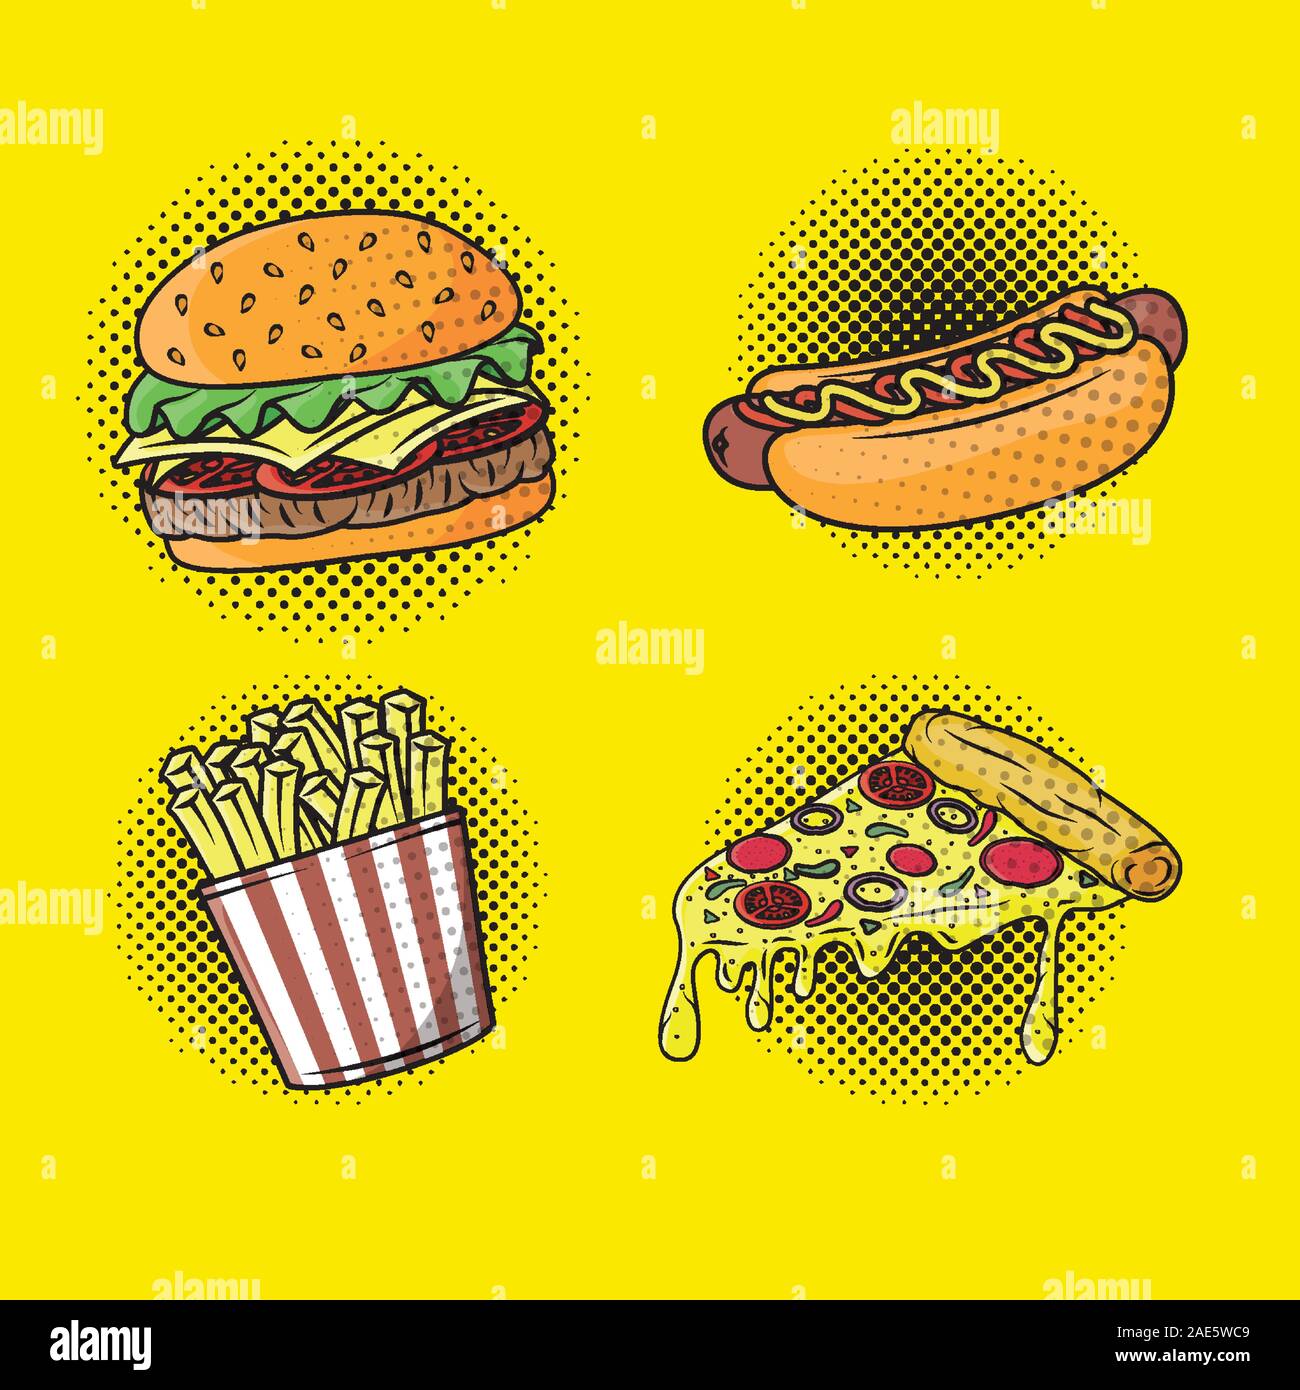 søsyge Grader celsius vigtig delicious fast food pop art style Stock Vector Image & Art - Alamy